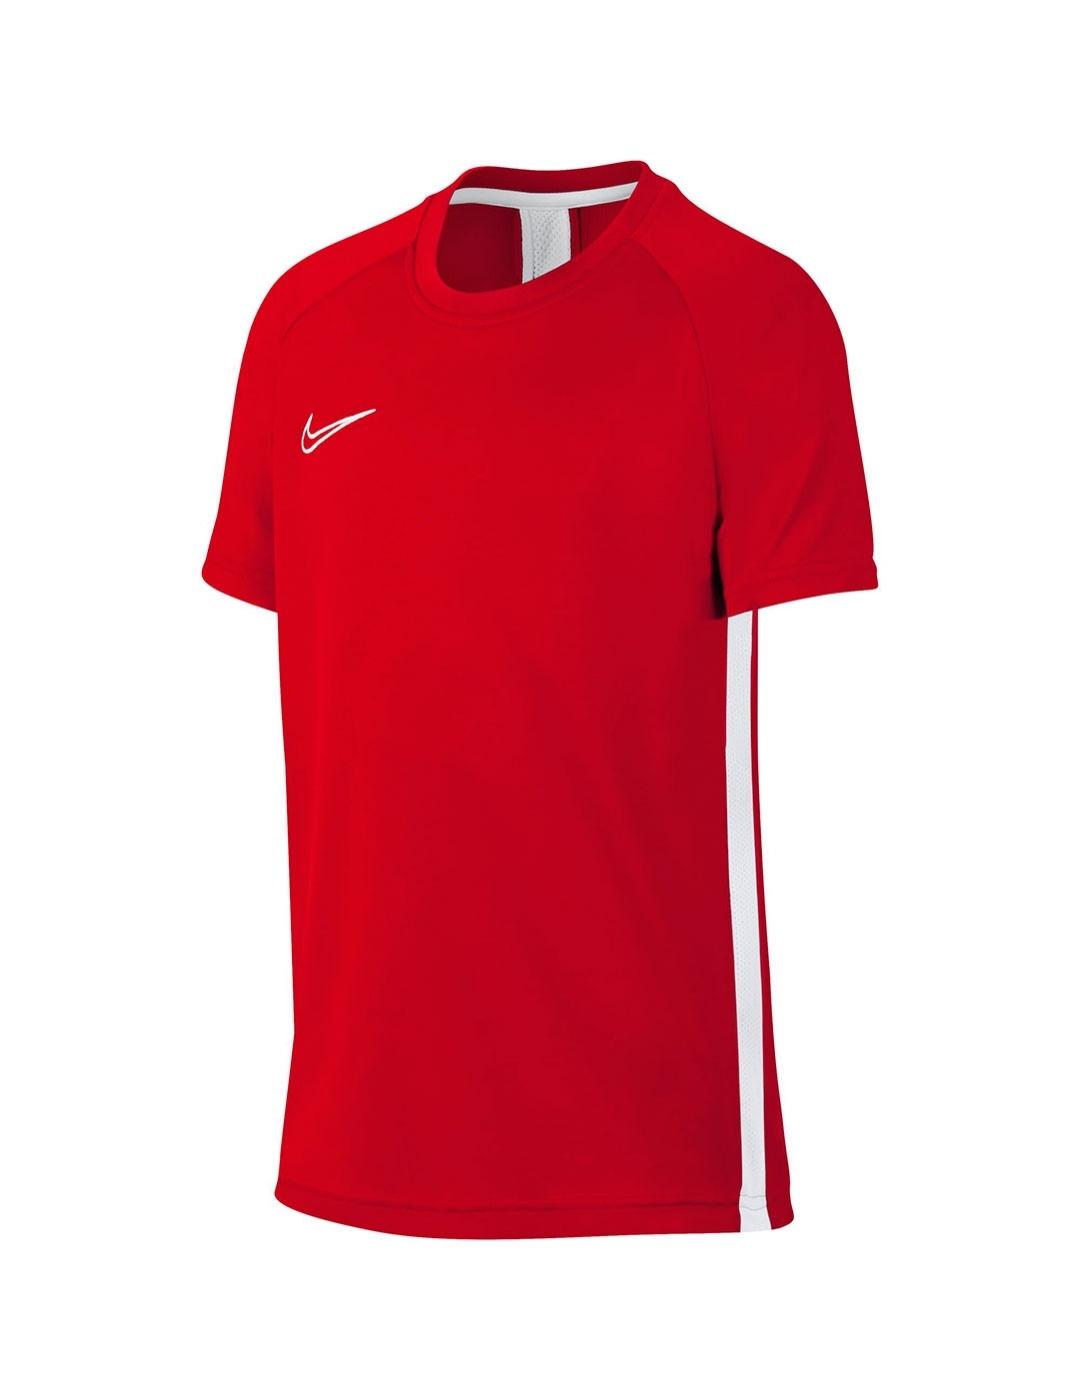 Camiseta Niño Nike Dry Academy Rojo/Blanco